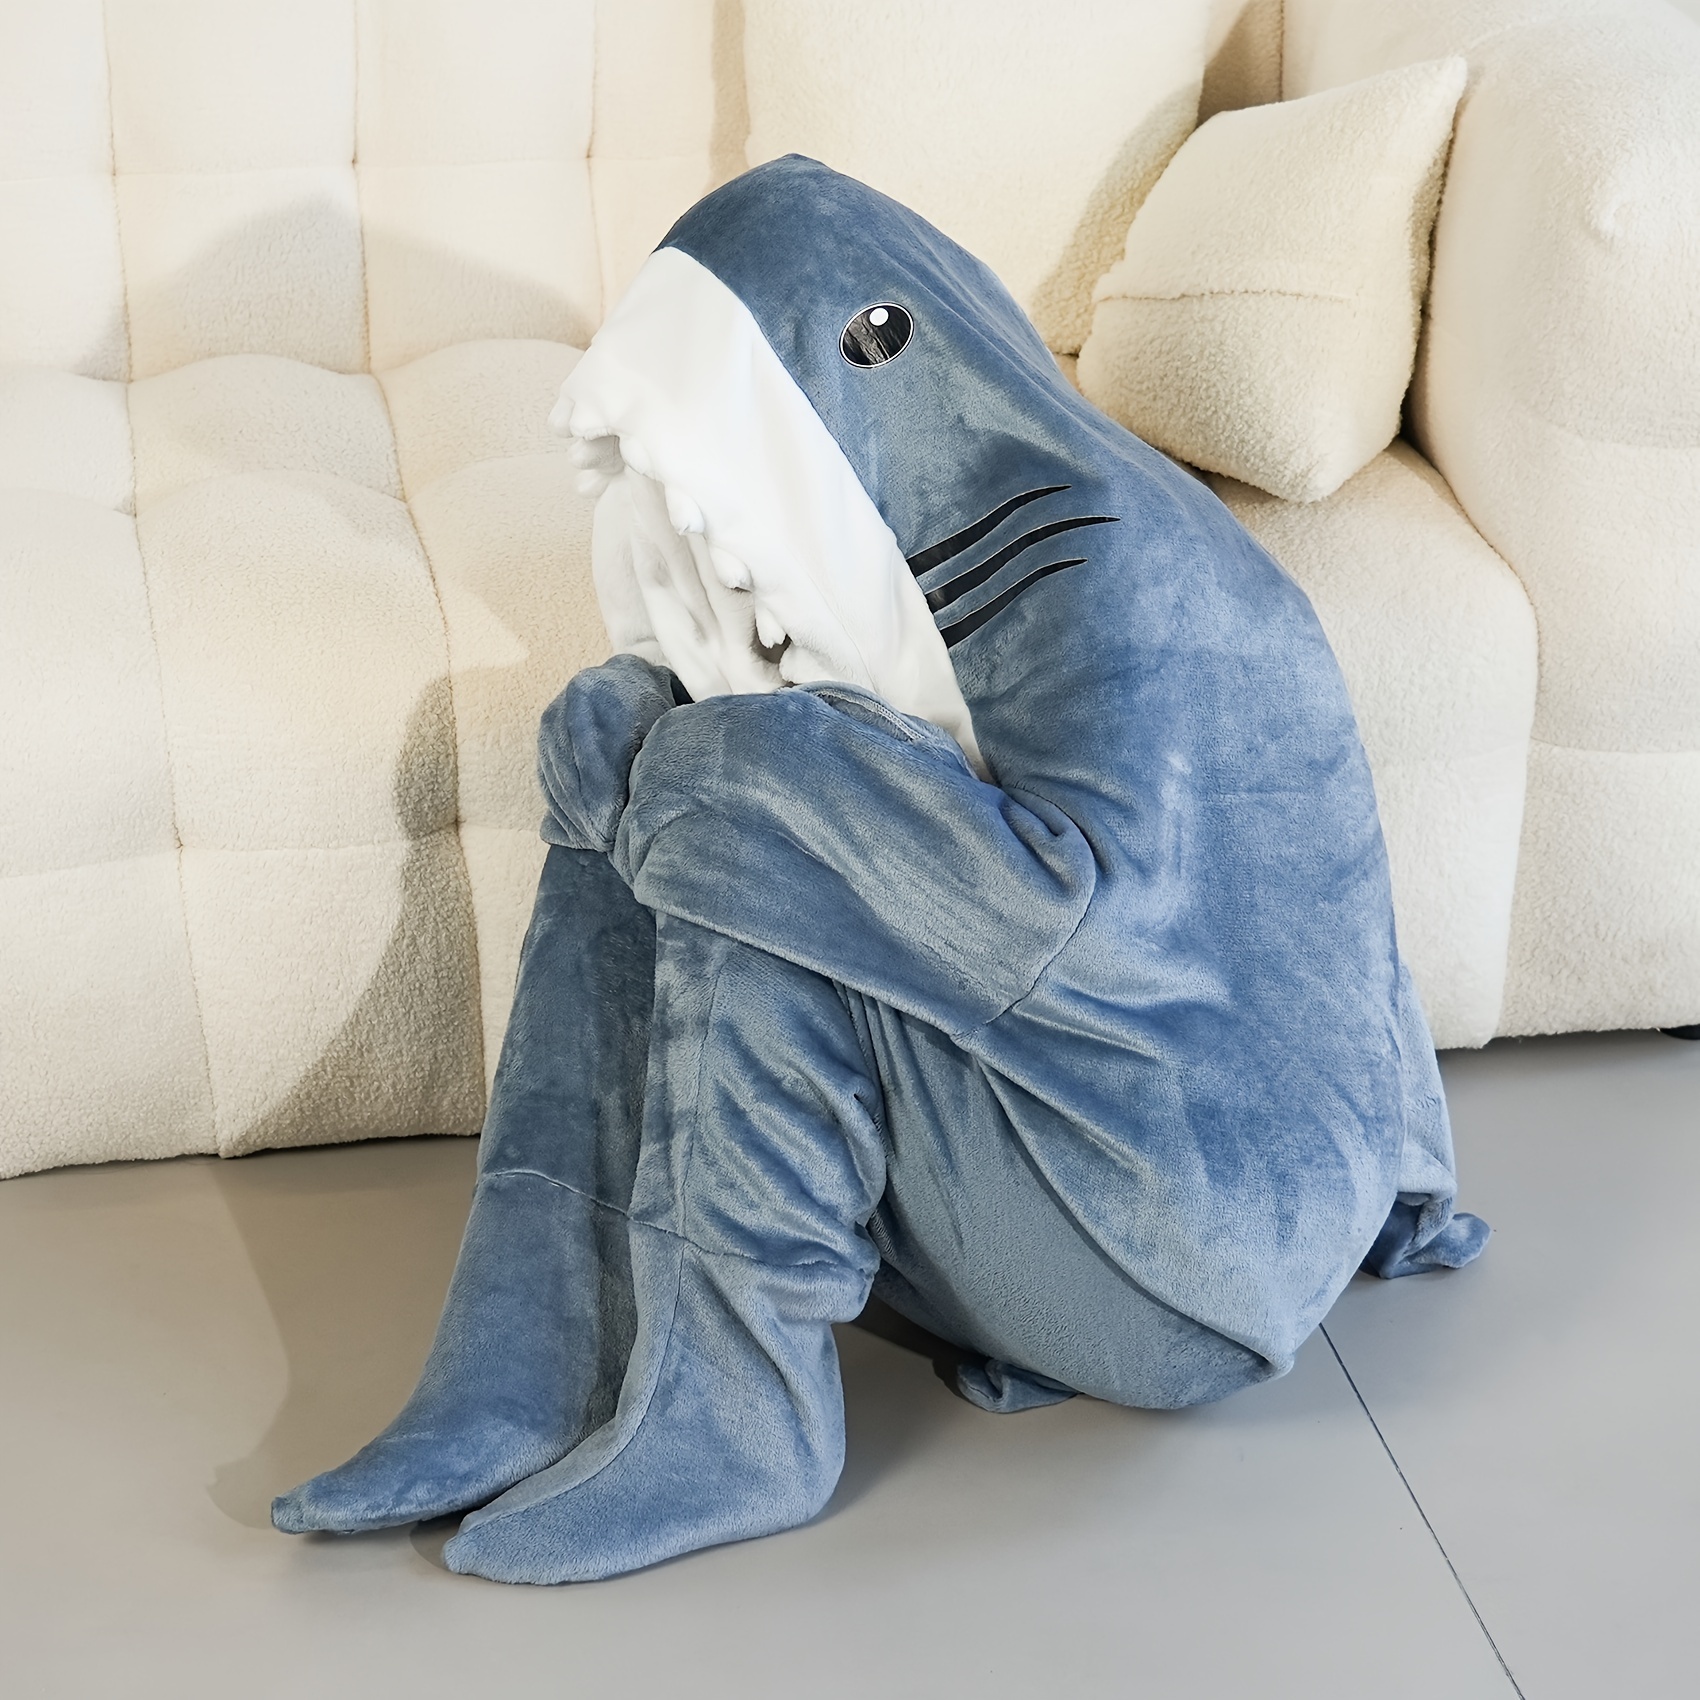  CRDWN Manta de tiburón con capucha, saco de dormir de tiburón,  linda manta de tiburón para adultos, súper suave, cómoda y portátil, saco  de dormir con capucha de franela de tiburón